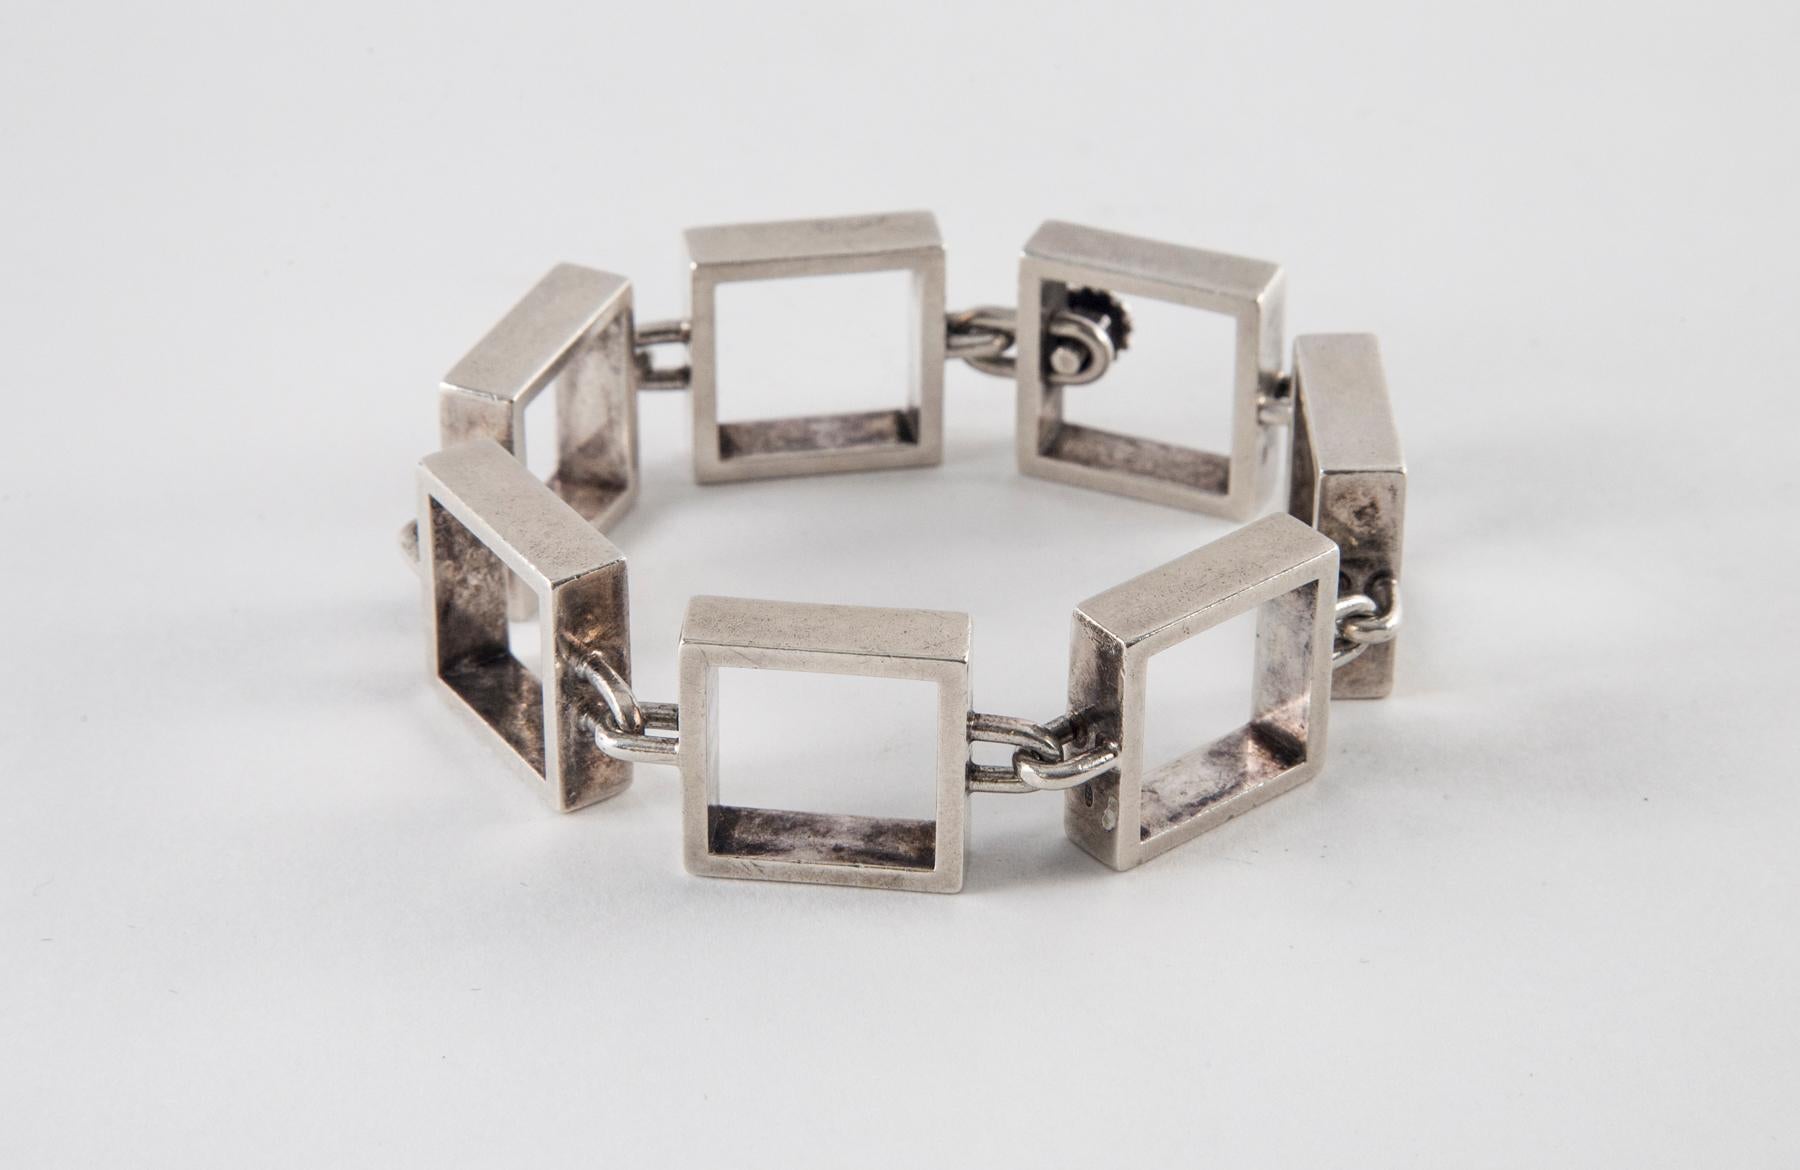 Hans Hansen Sterling Silver Square Link Bracelet
7.25